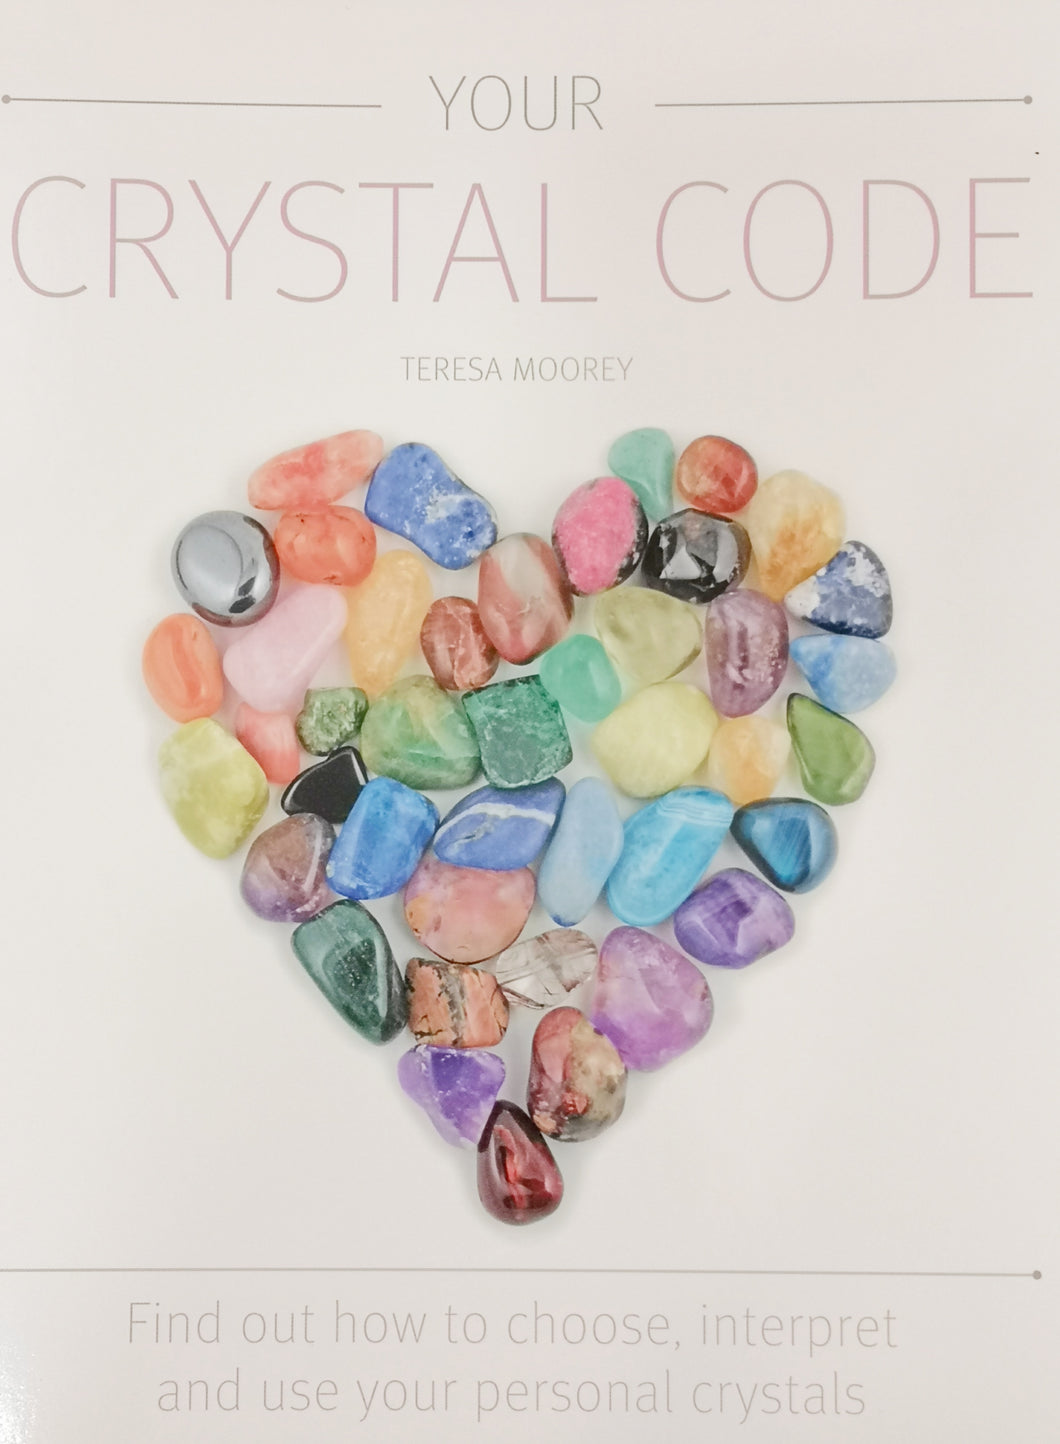 水晶参考书-Your Crystal Code 作者 Teresa Moorey